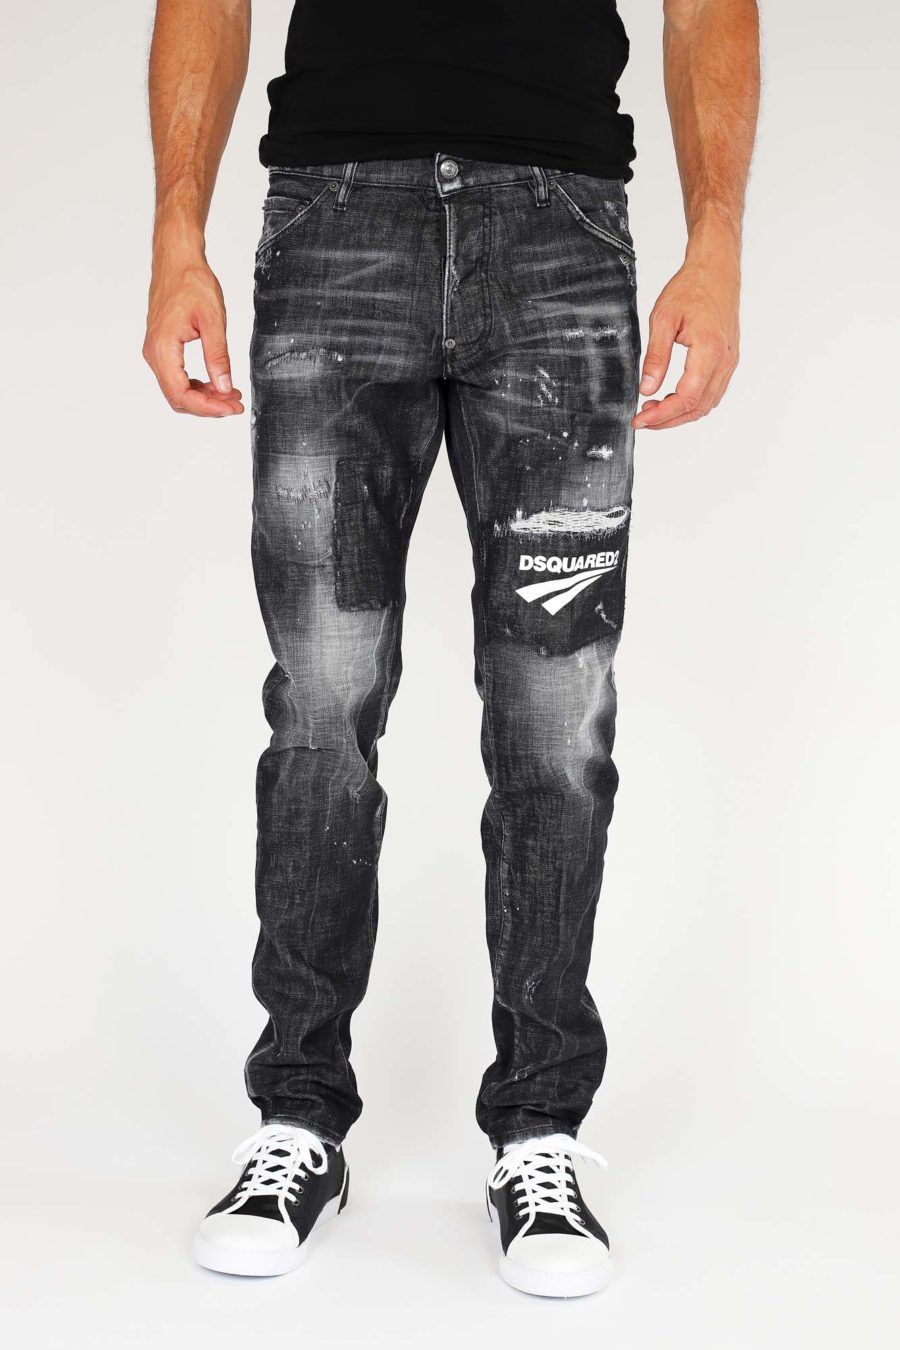 Pantalón cool guy jean negro con logo - IMG 9882